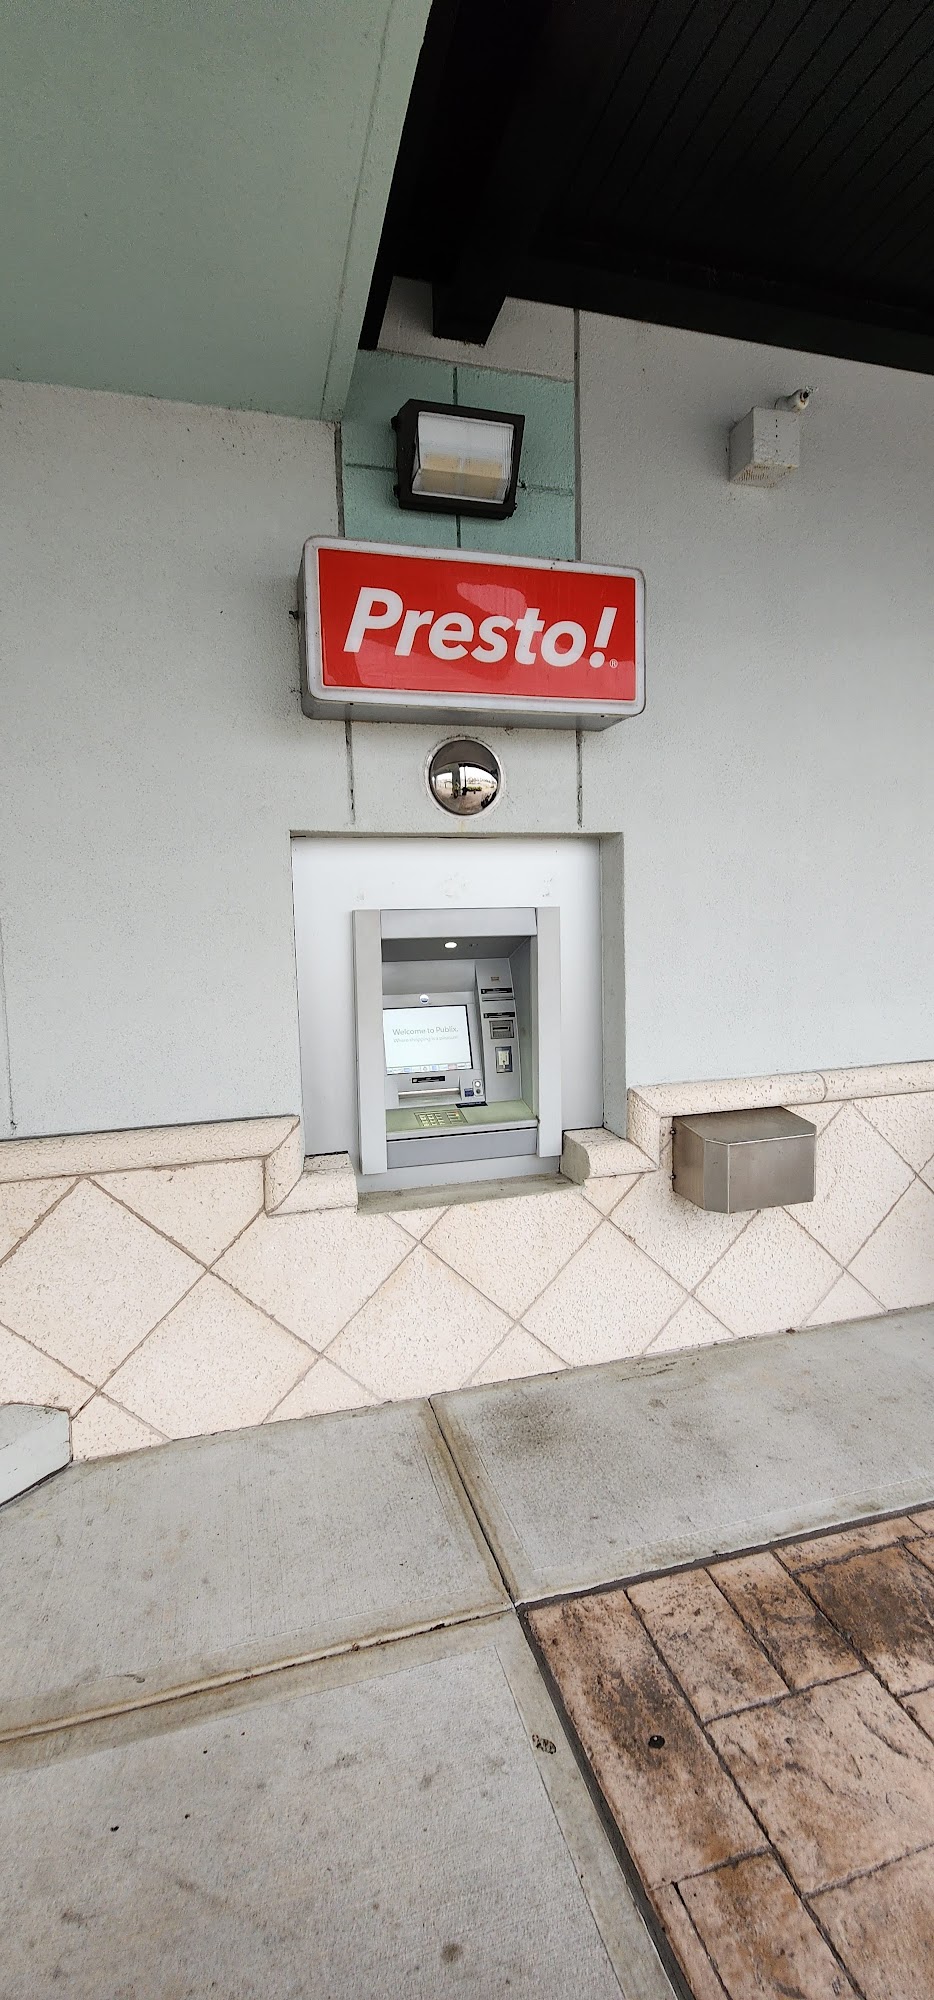 Presto! ATM at Publix Super Market